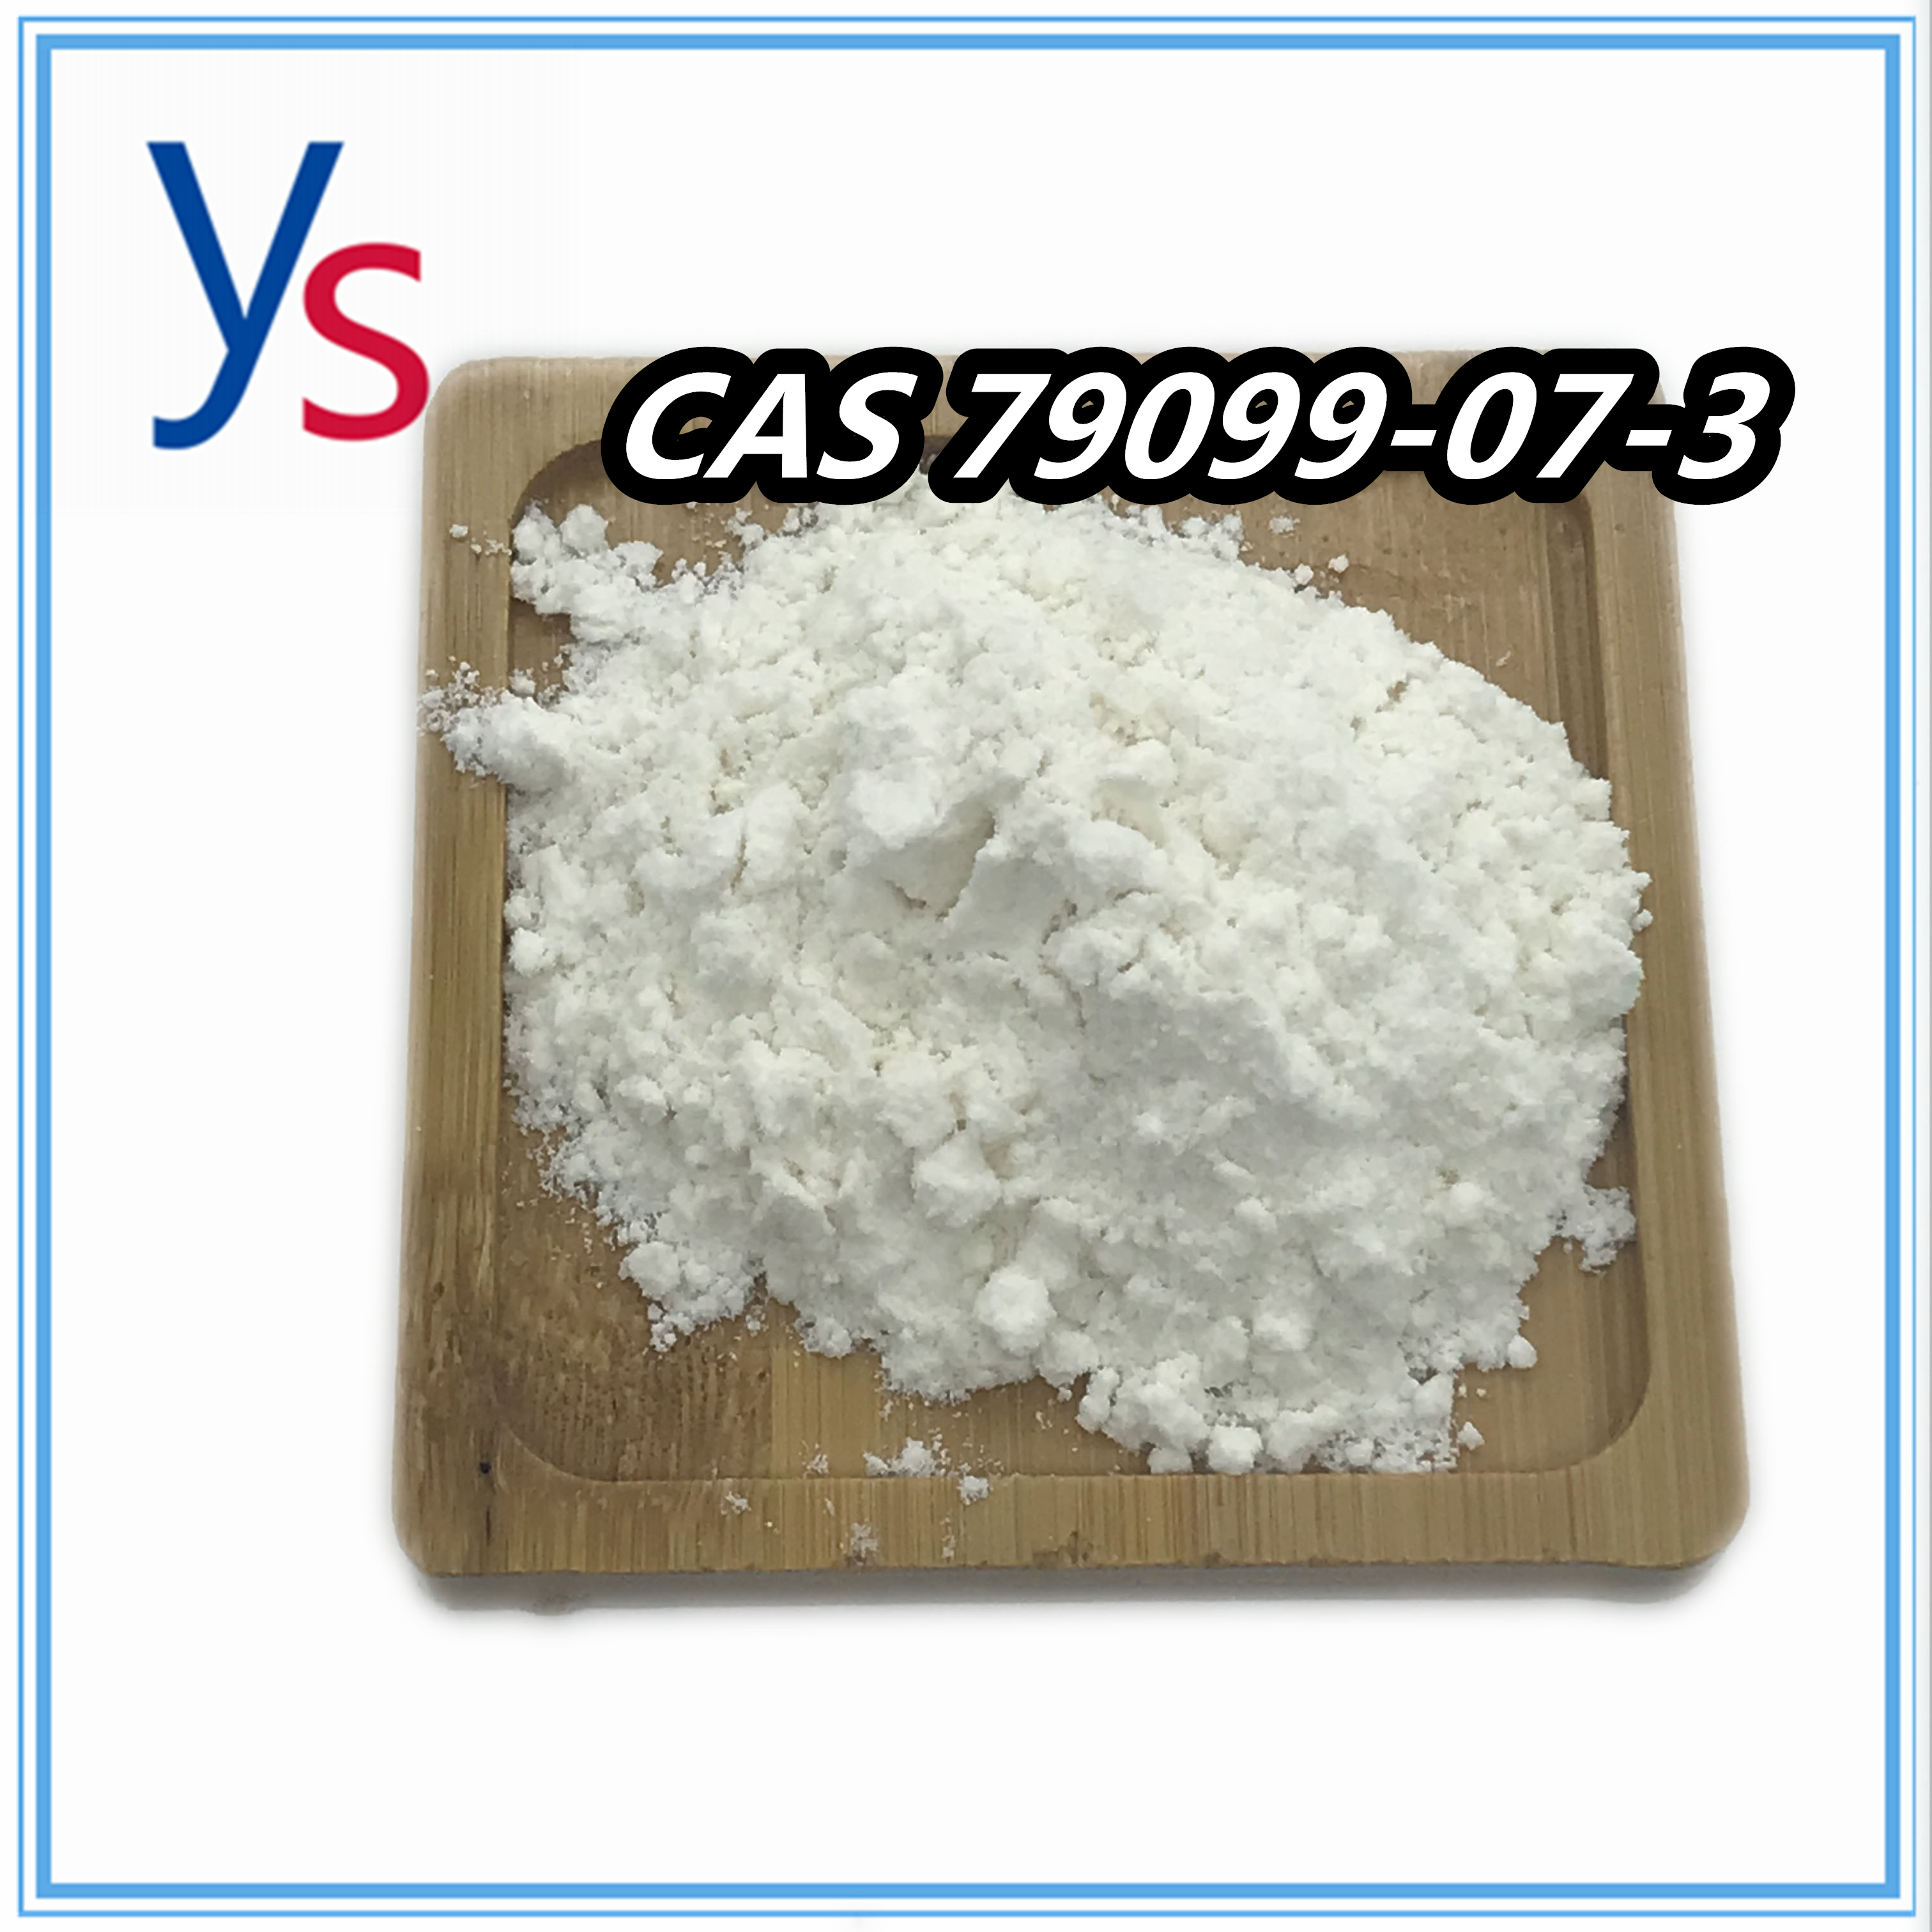  CAS 79099-07-3 Farmaceutische chemische stof met hoge zuiverheid 